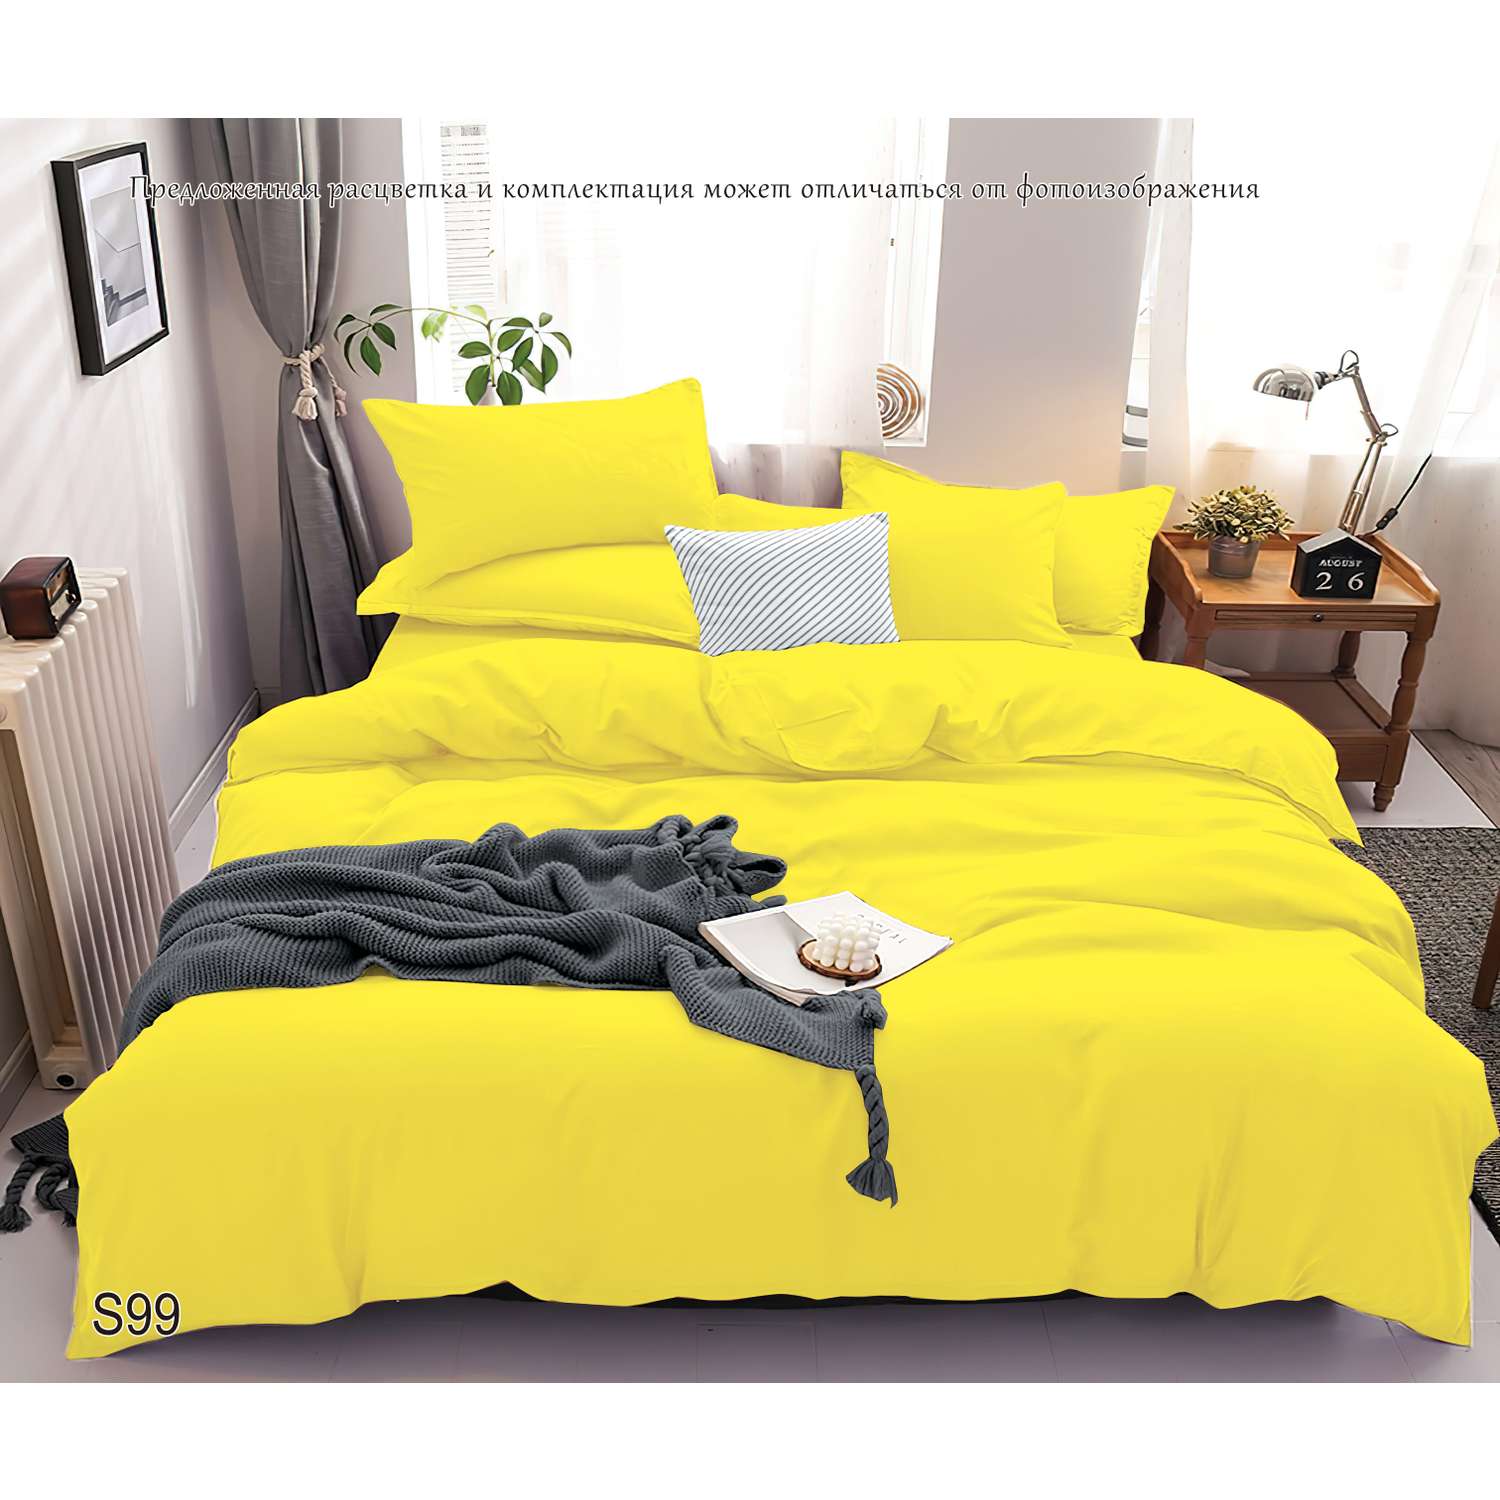 Комплект постельного белья PAVLine Манетти полисатин 1.5 сп. желтый S99 - фото 2